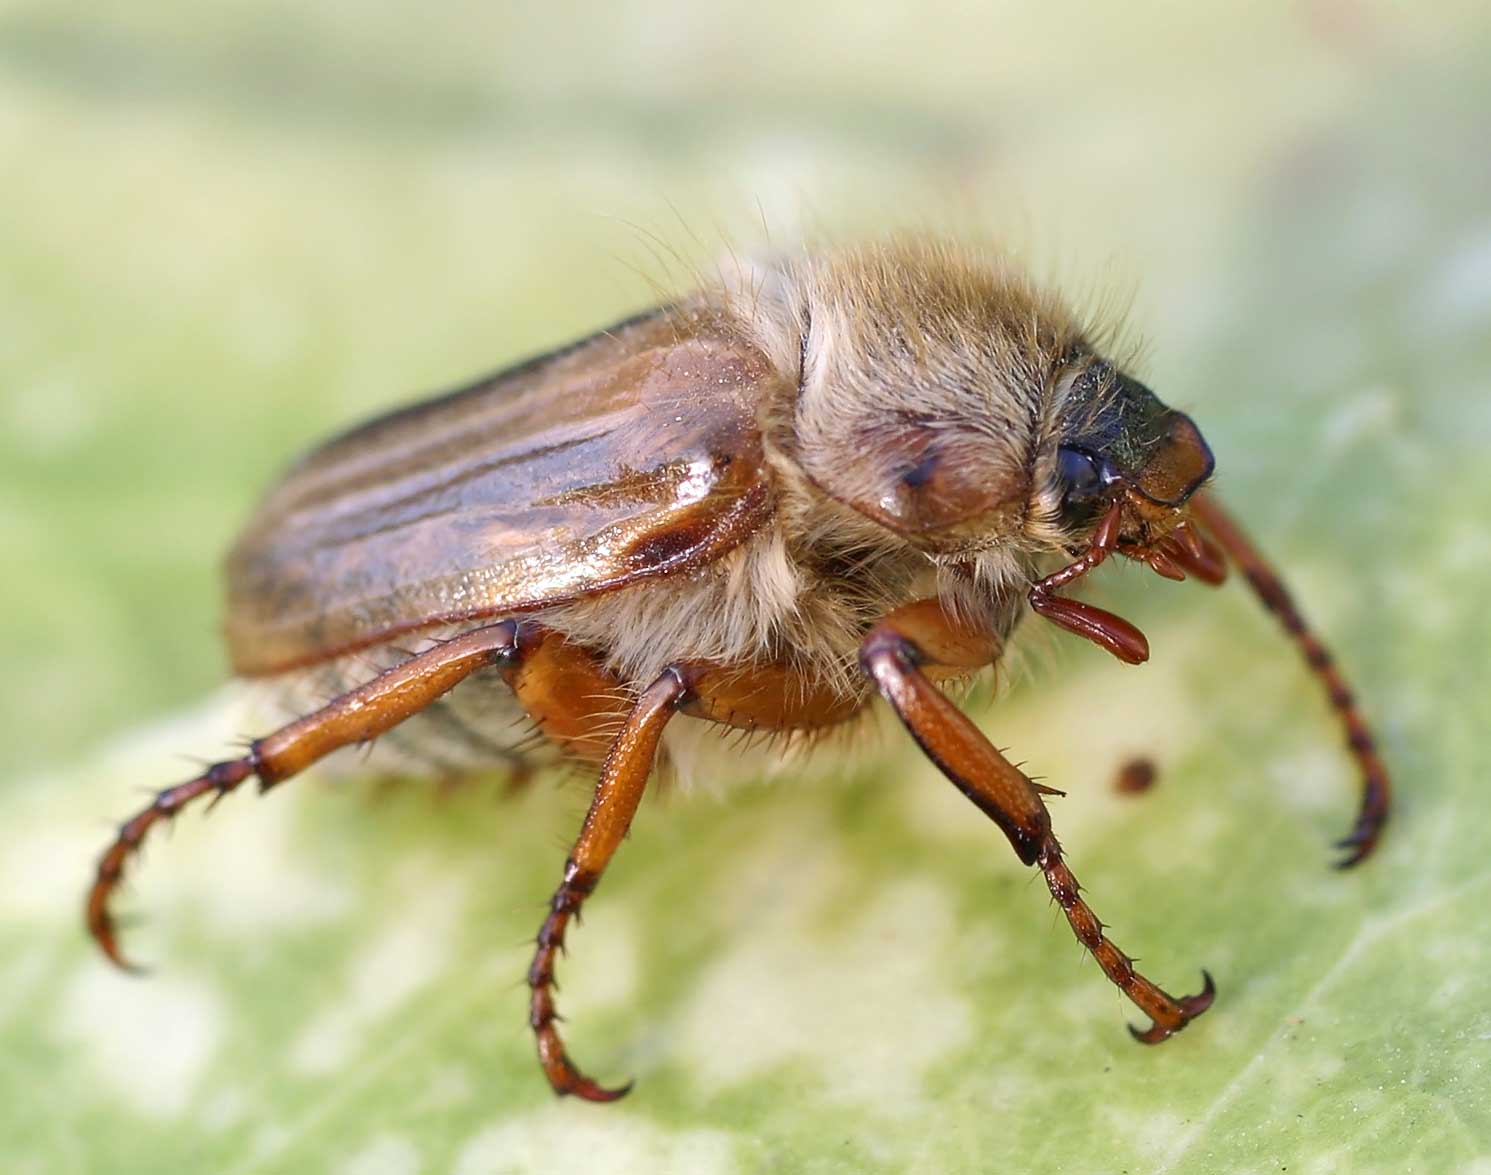 Хрущ, или майский жук — как бороться с вредителем? описание, личинка, как избавиться. фото — ботаничка